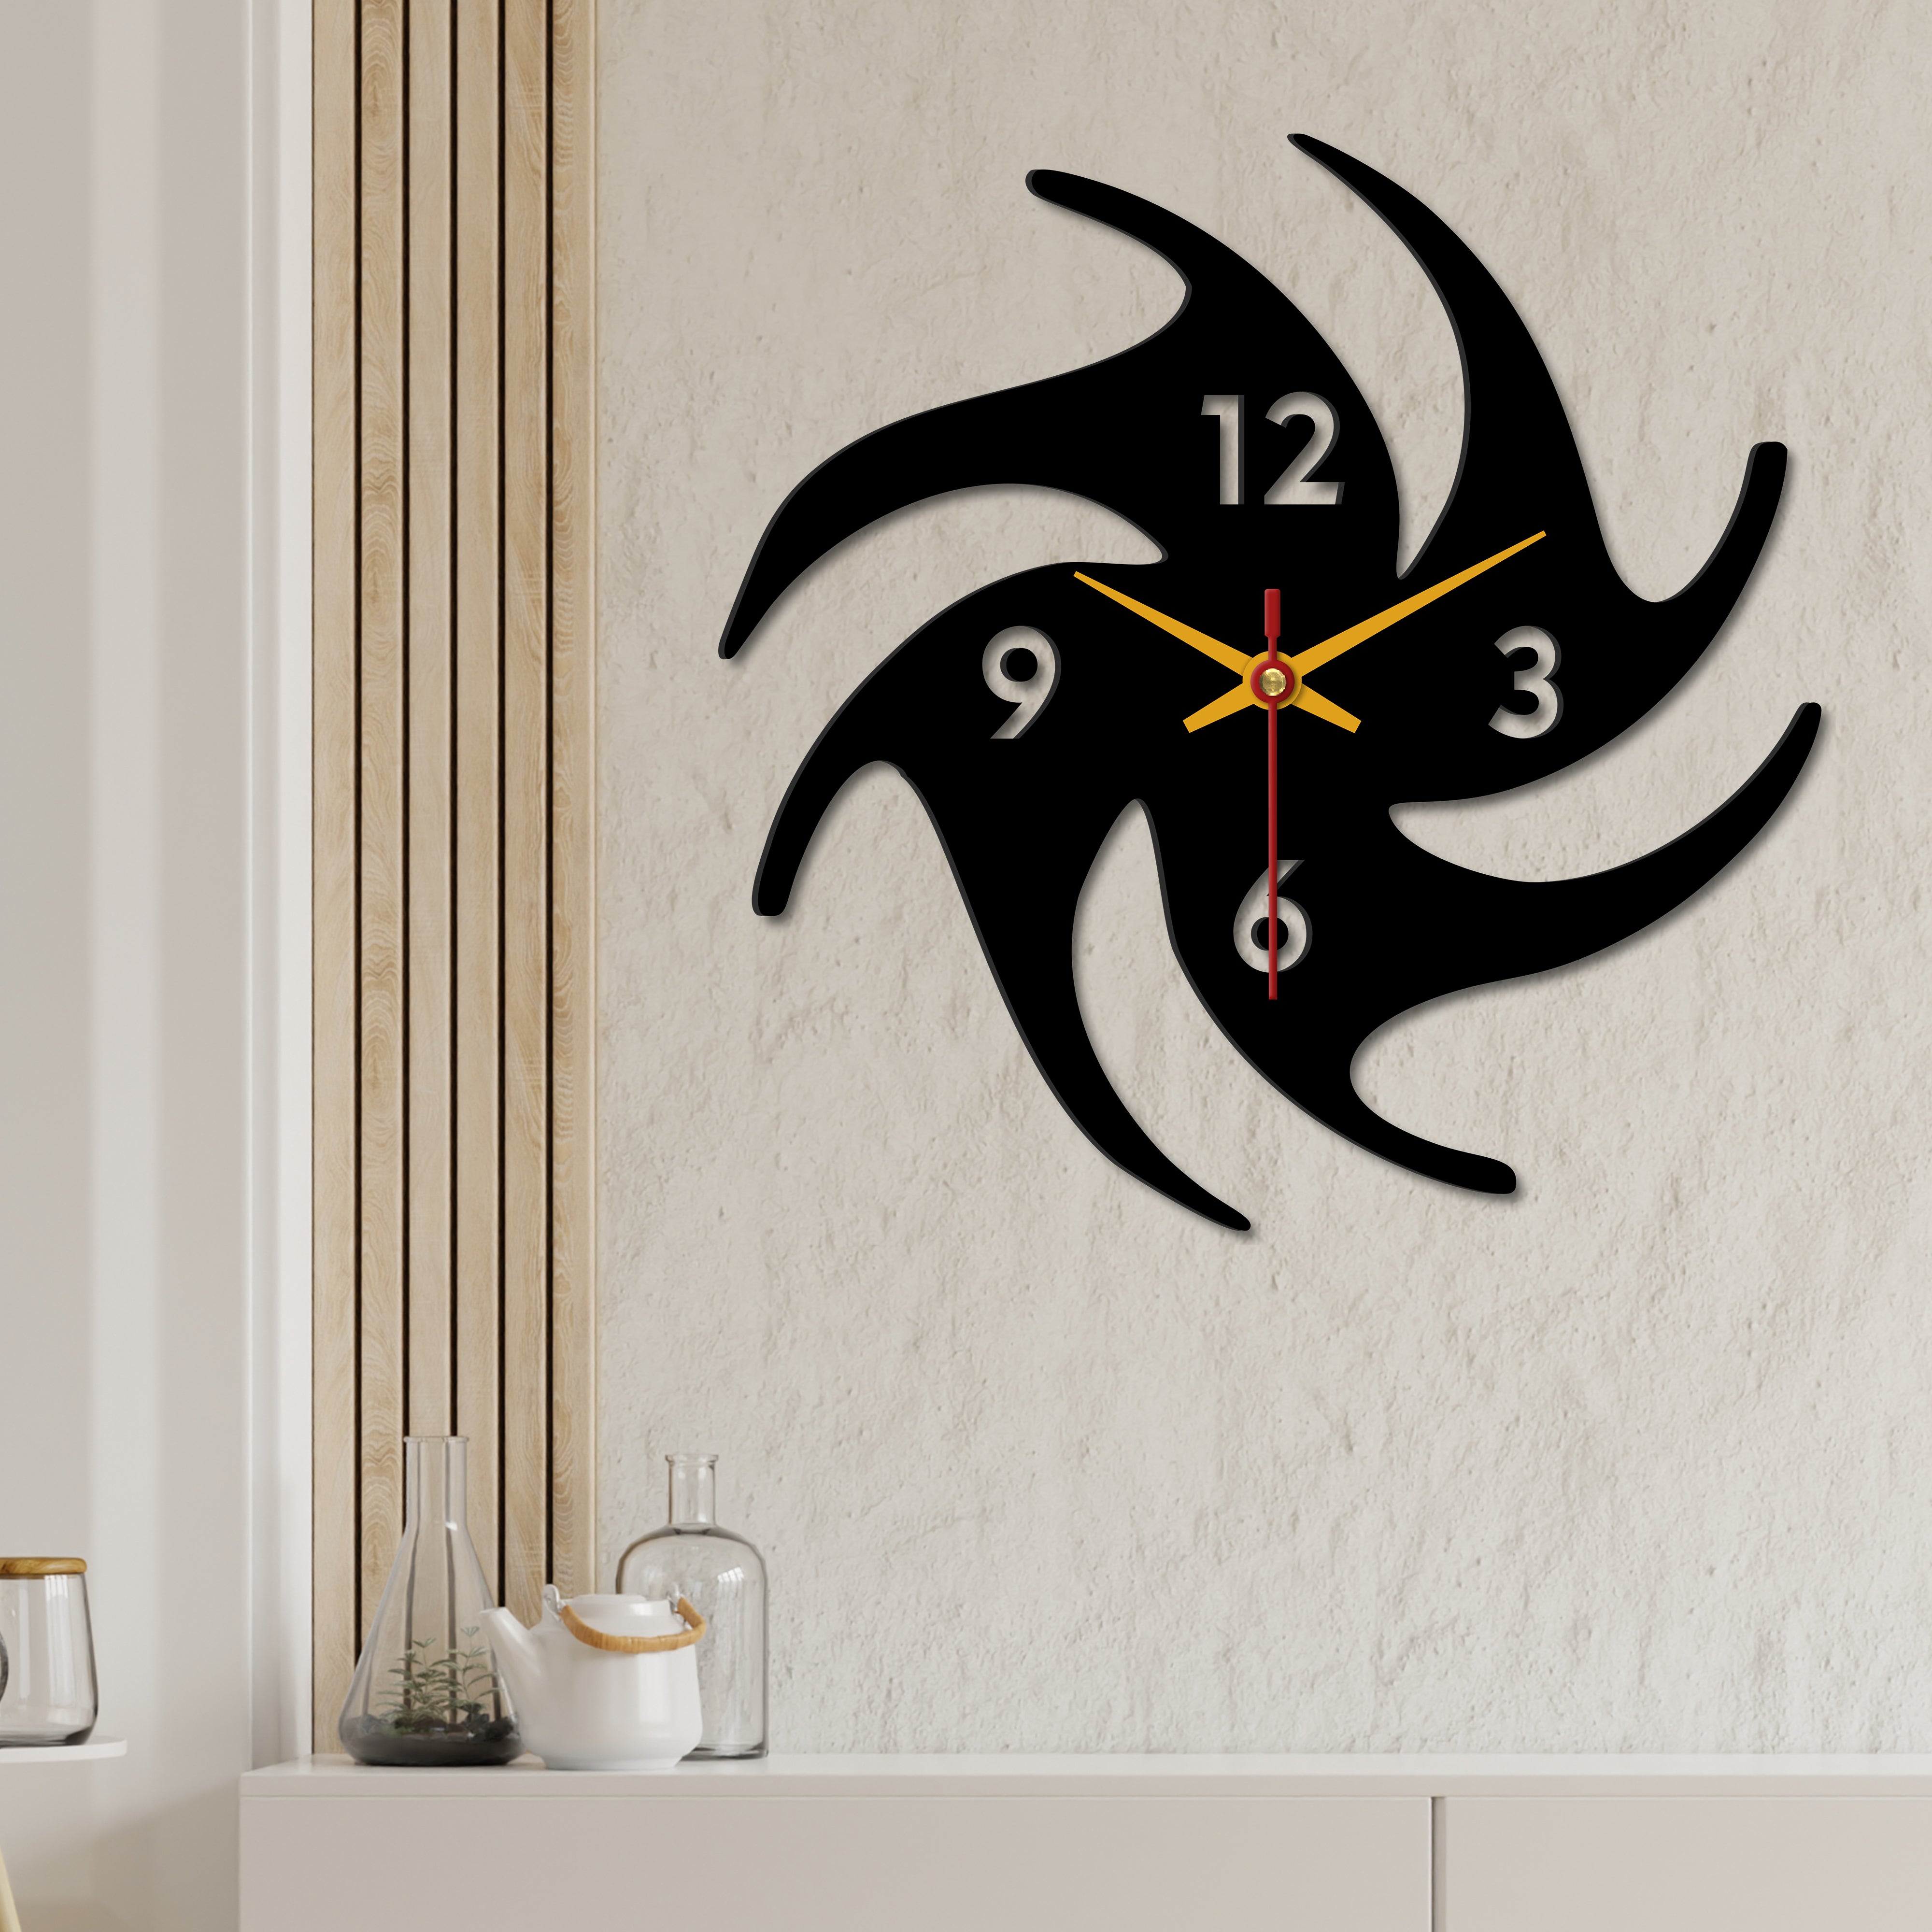 Modern Look Wooden Wall Clock